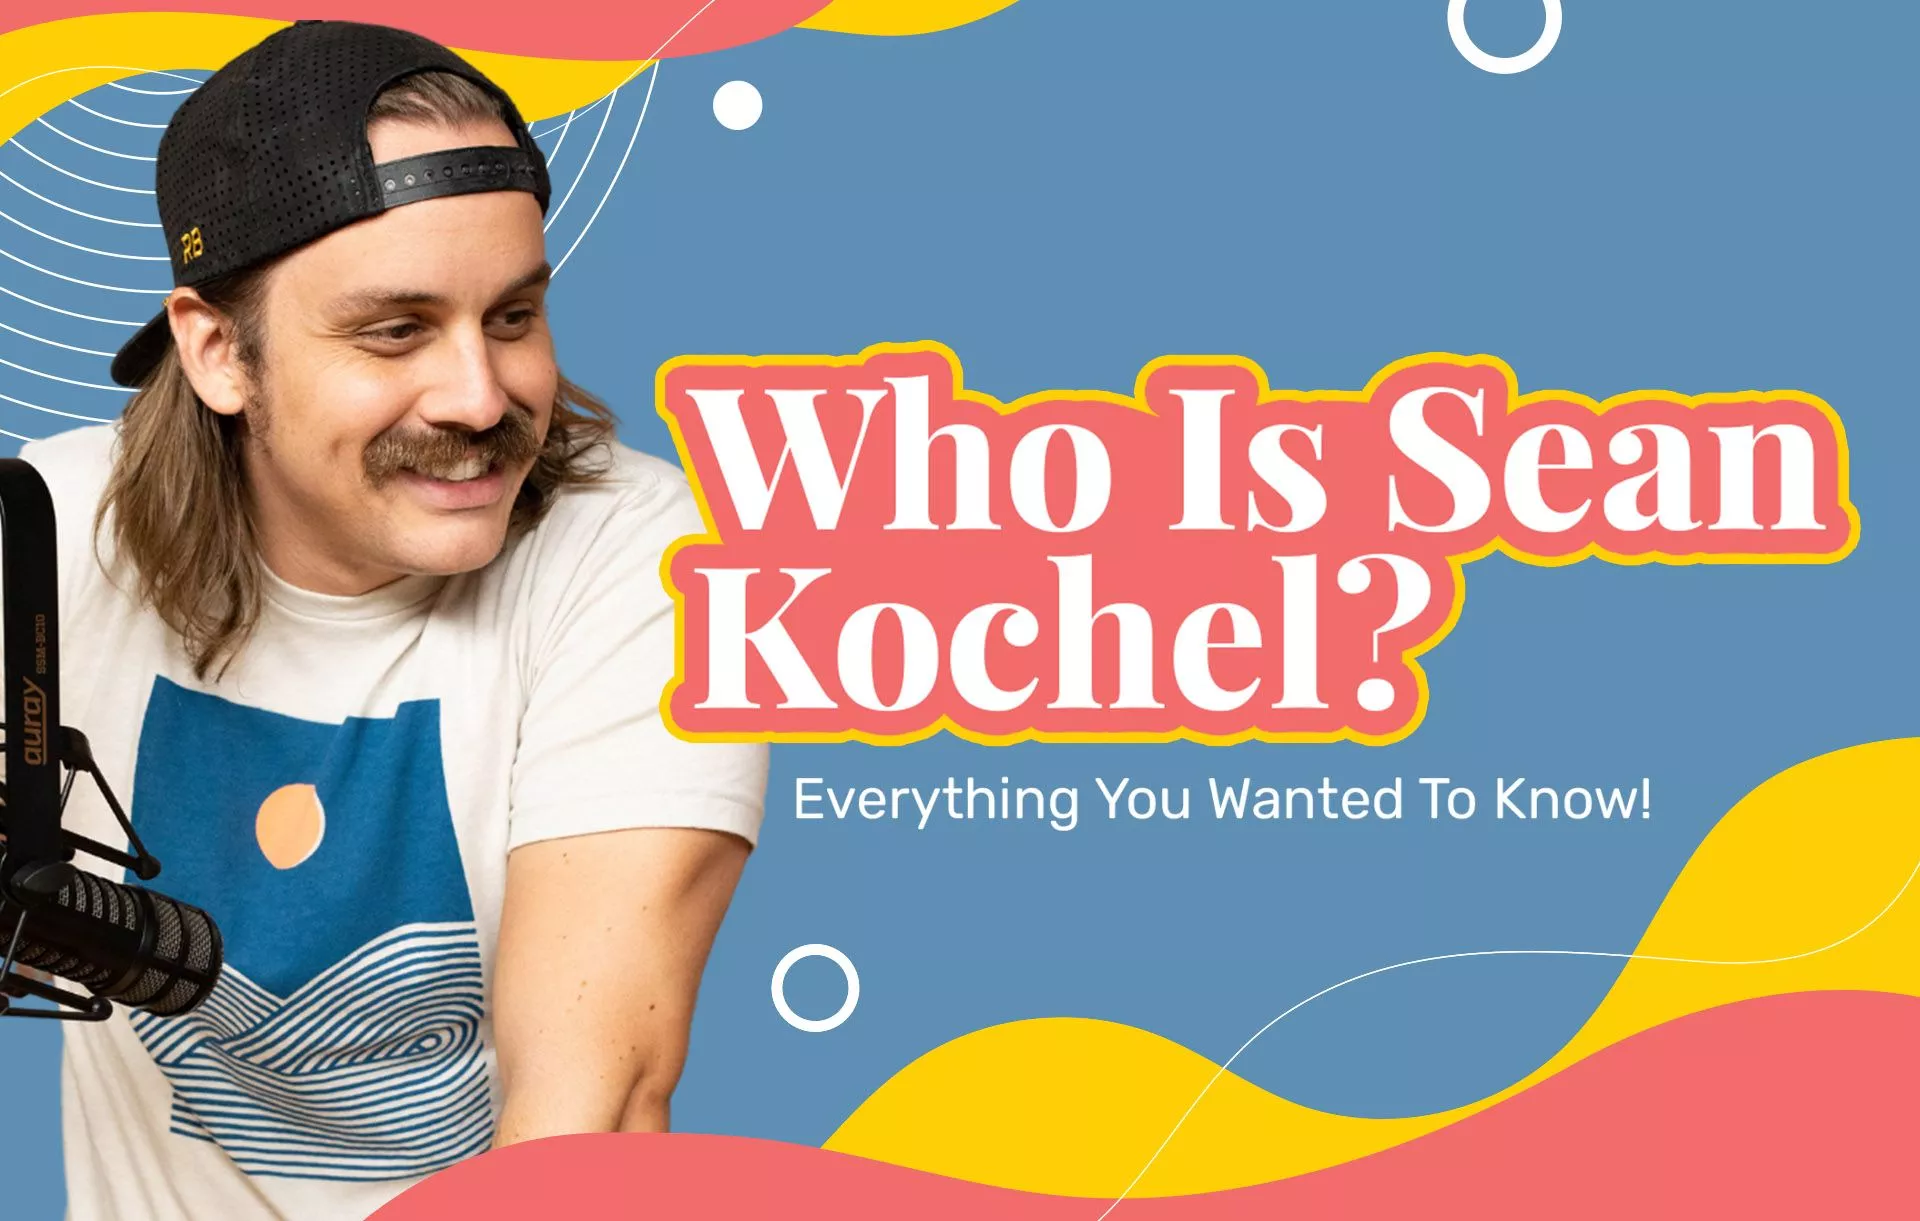 Who Is Sean Kochel?